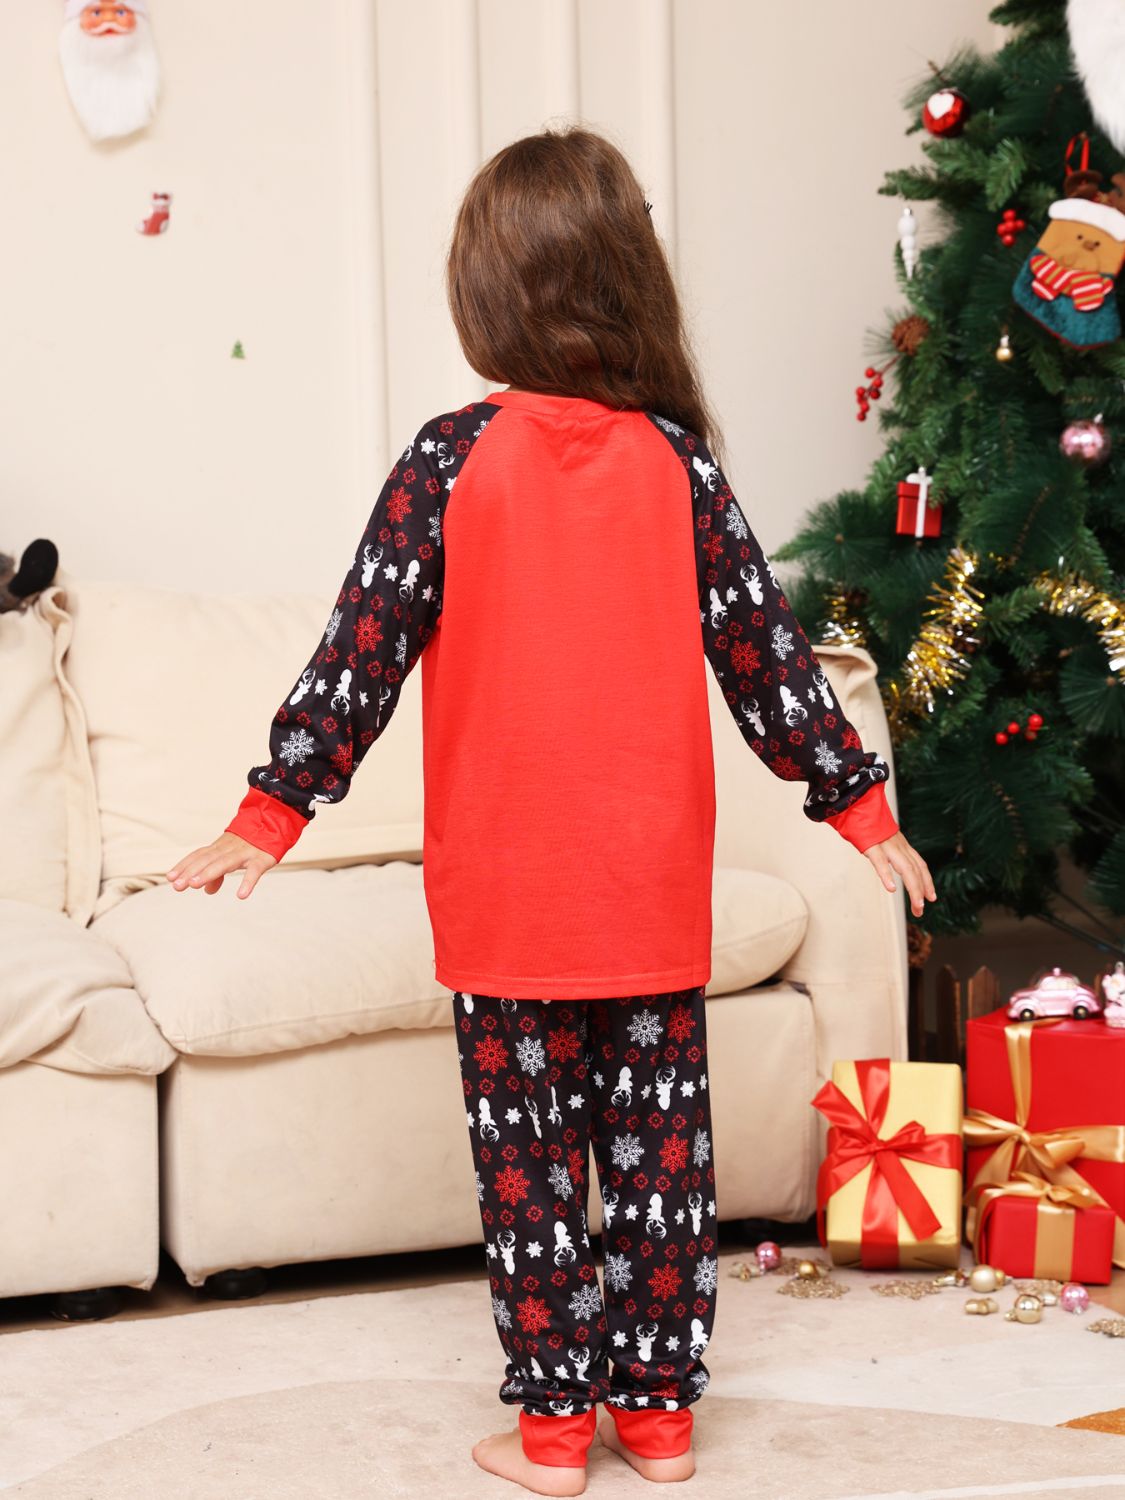 Infant Reindeer Christmas Family Pajama Top and Pants Set